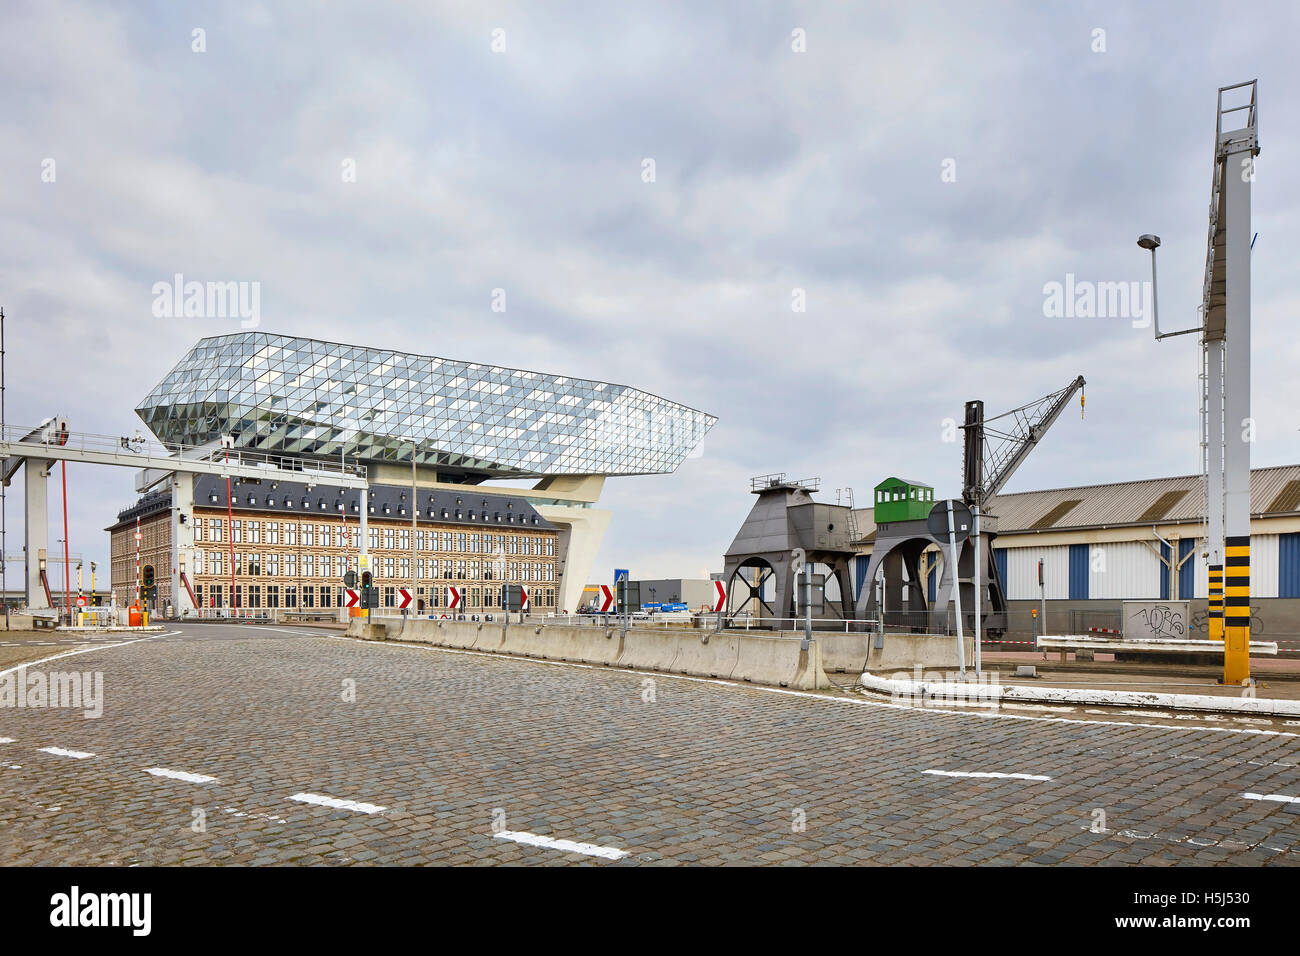 Distante, vista contestuale. Casa porta ad Anversa, Belgio. Architetto: Zaha Hadid Architects, 2016. Foto Stock